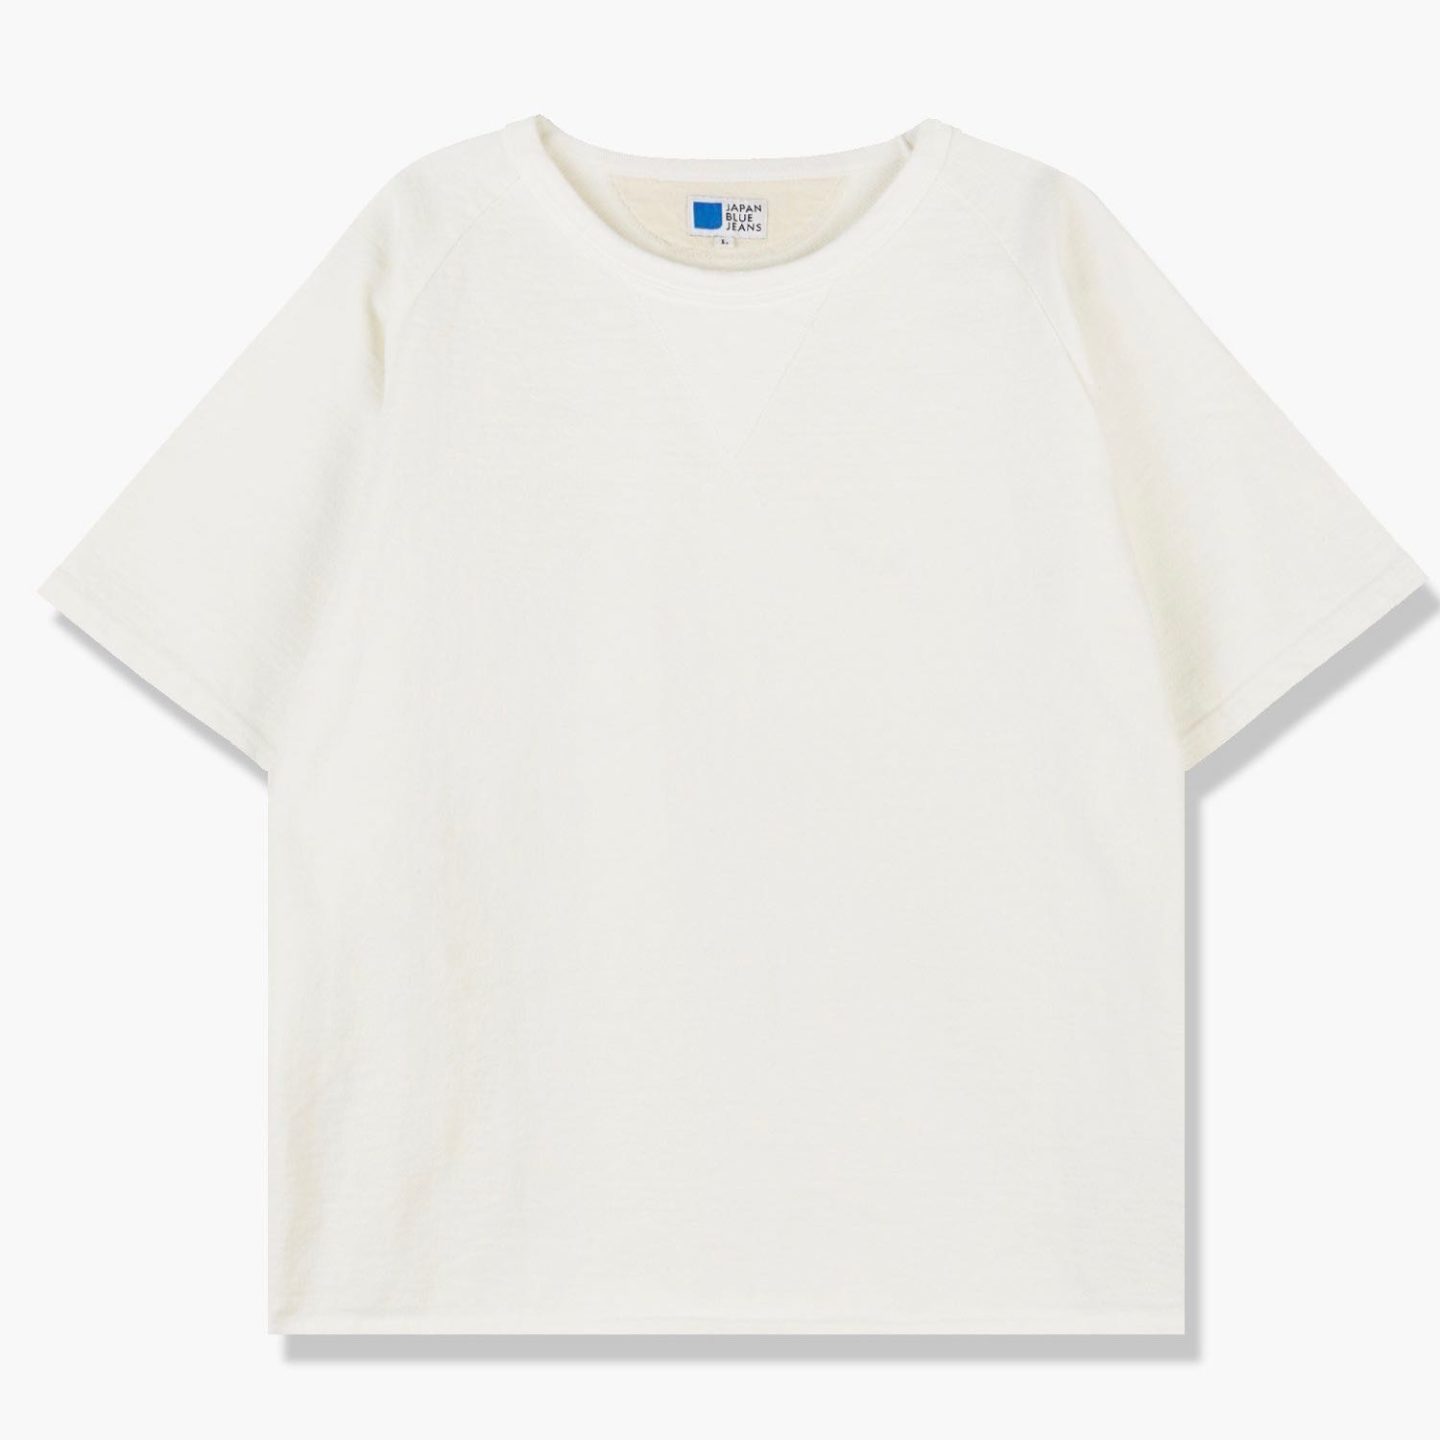 japan blue t-shirt raglan blanc